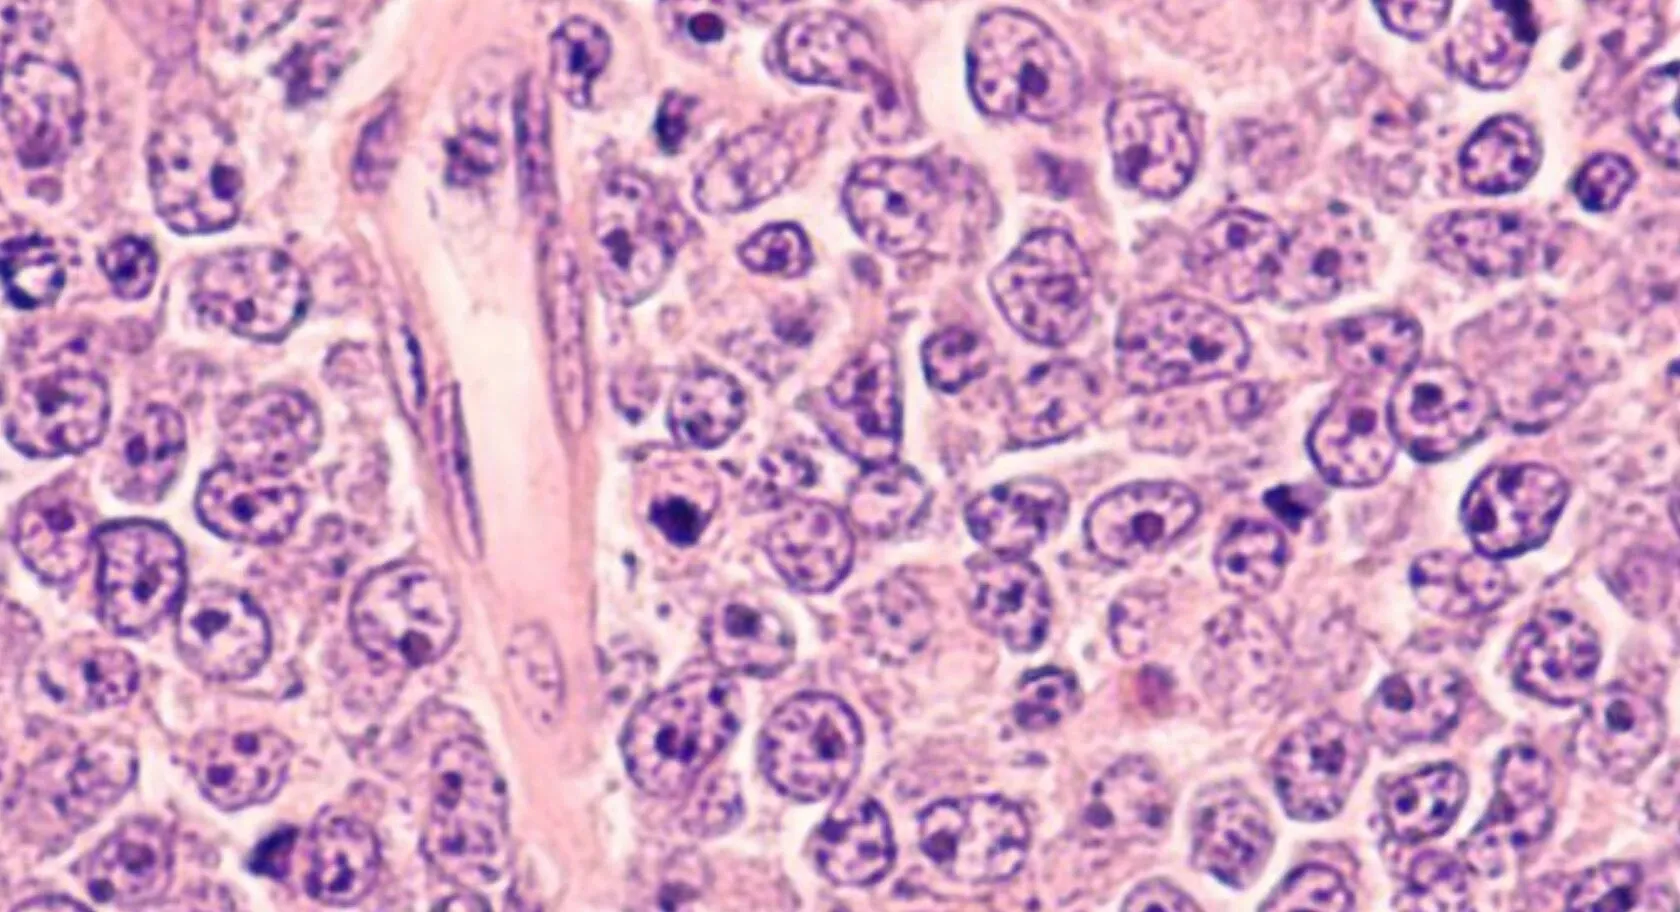 Diffuses großzelliges B-Zell-Lymphom im Querschnitt, Photomikrographie